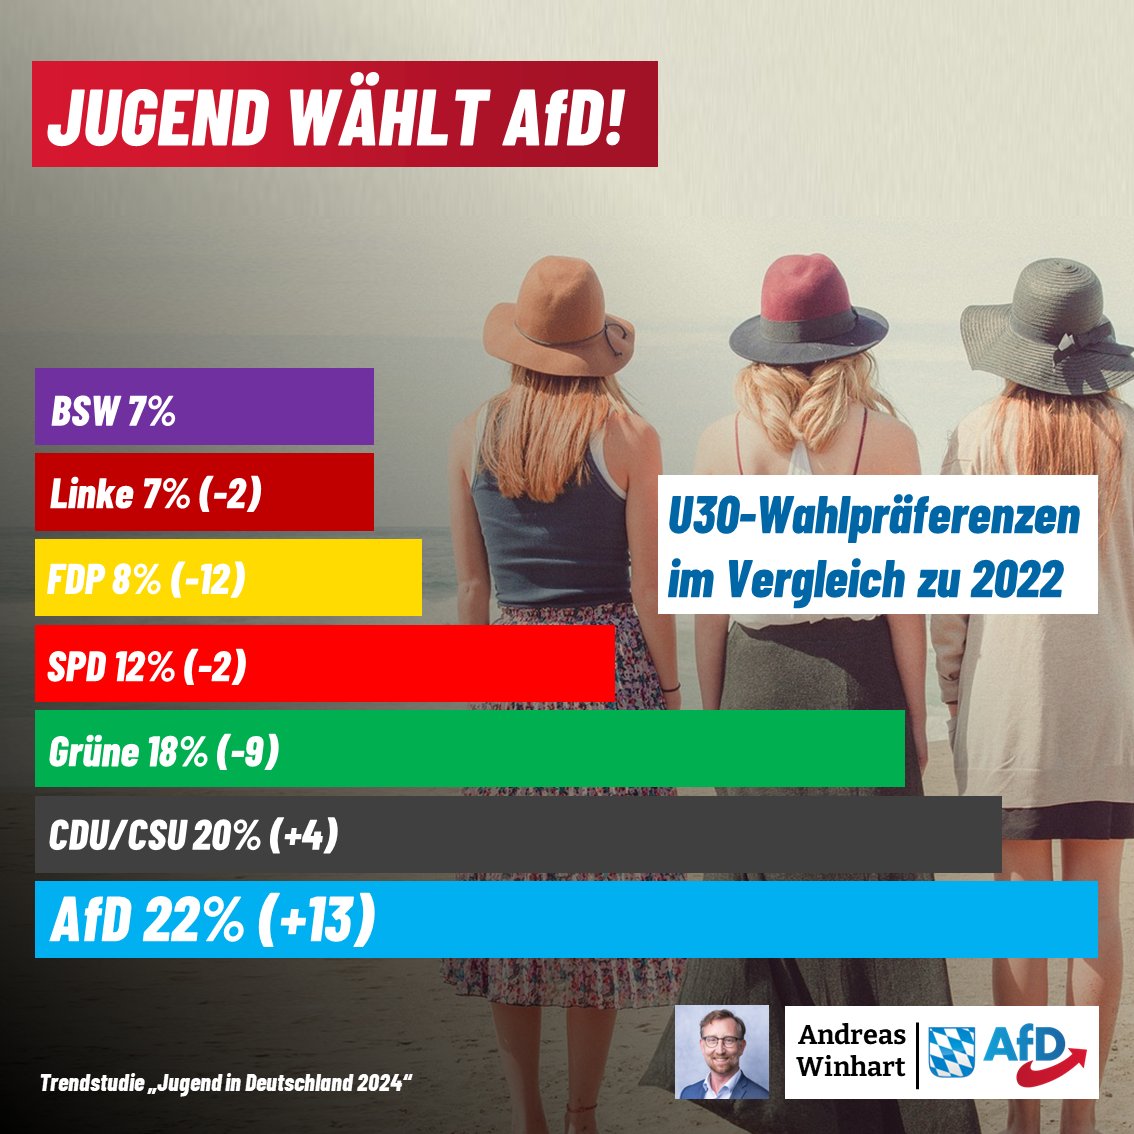 +++#Jugendliche wählen #AfD+++

Die AfD ist Deutschlands beliebteste Partei bei unter 30-Jährigen, die #Gruenen landen nur noch abgeschlagen auf Platz 3. 
Deutschlands Zukunft ist Blau! 💙🇩🇪🏆